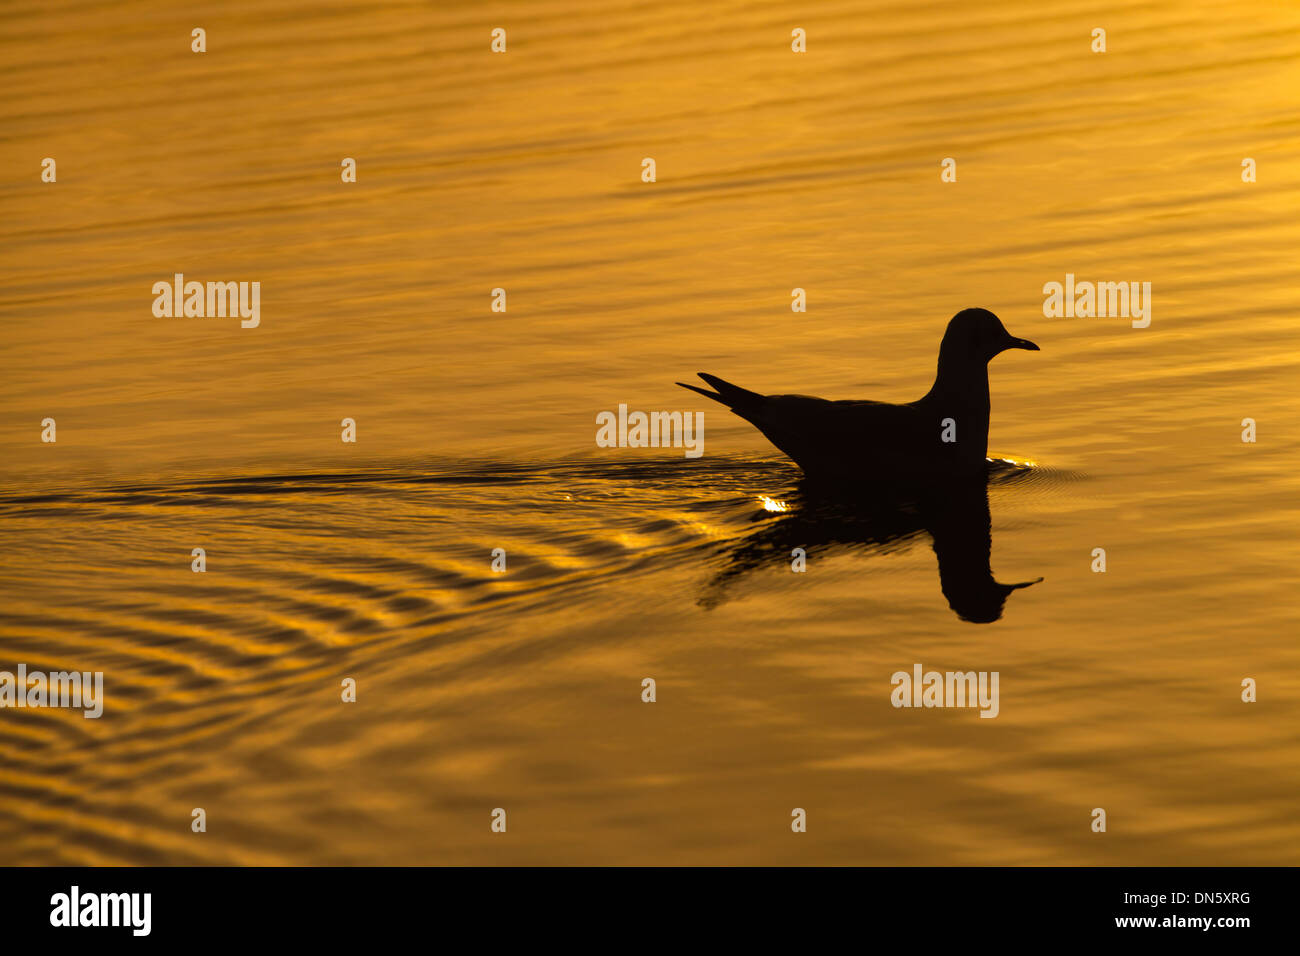 Black-headed Gull Larus ridibundus silhouetted on coastal pool at sunset Stock Photo